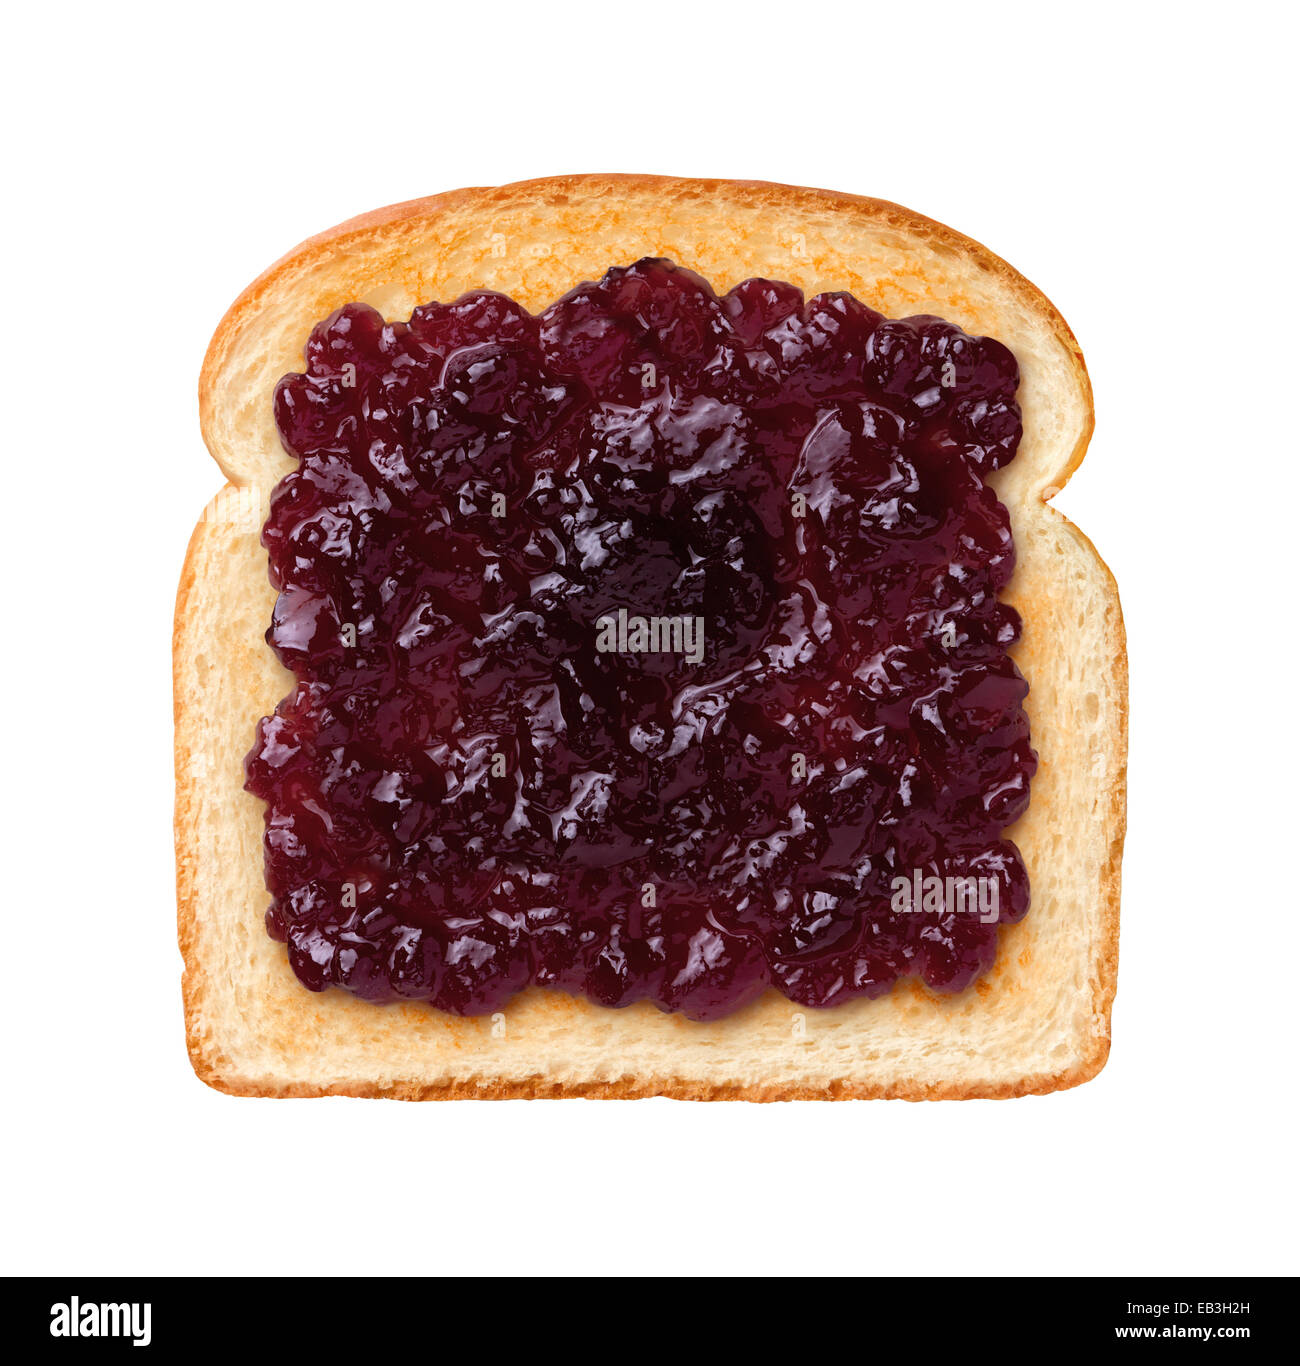 Vue aérienne d'une seule tranche de pain grillé avec de la gelée de raisin, ou de la confiture. Jelly est un doux propagation élastique fabriqué à partir de jus de fruits et de sucre Banque D'Images